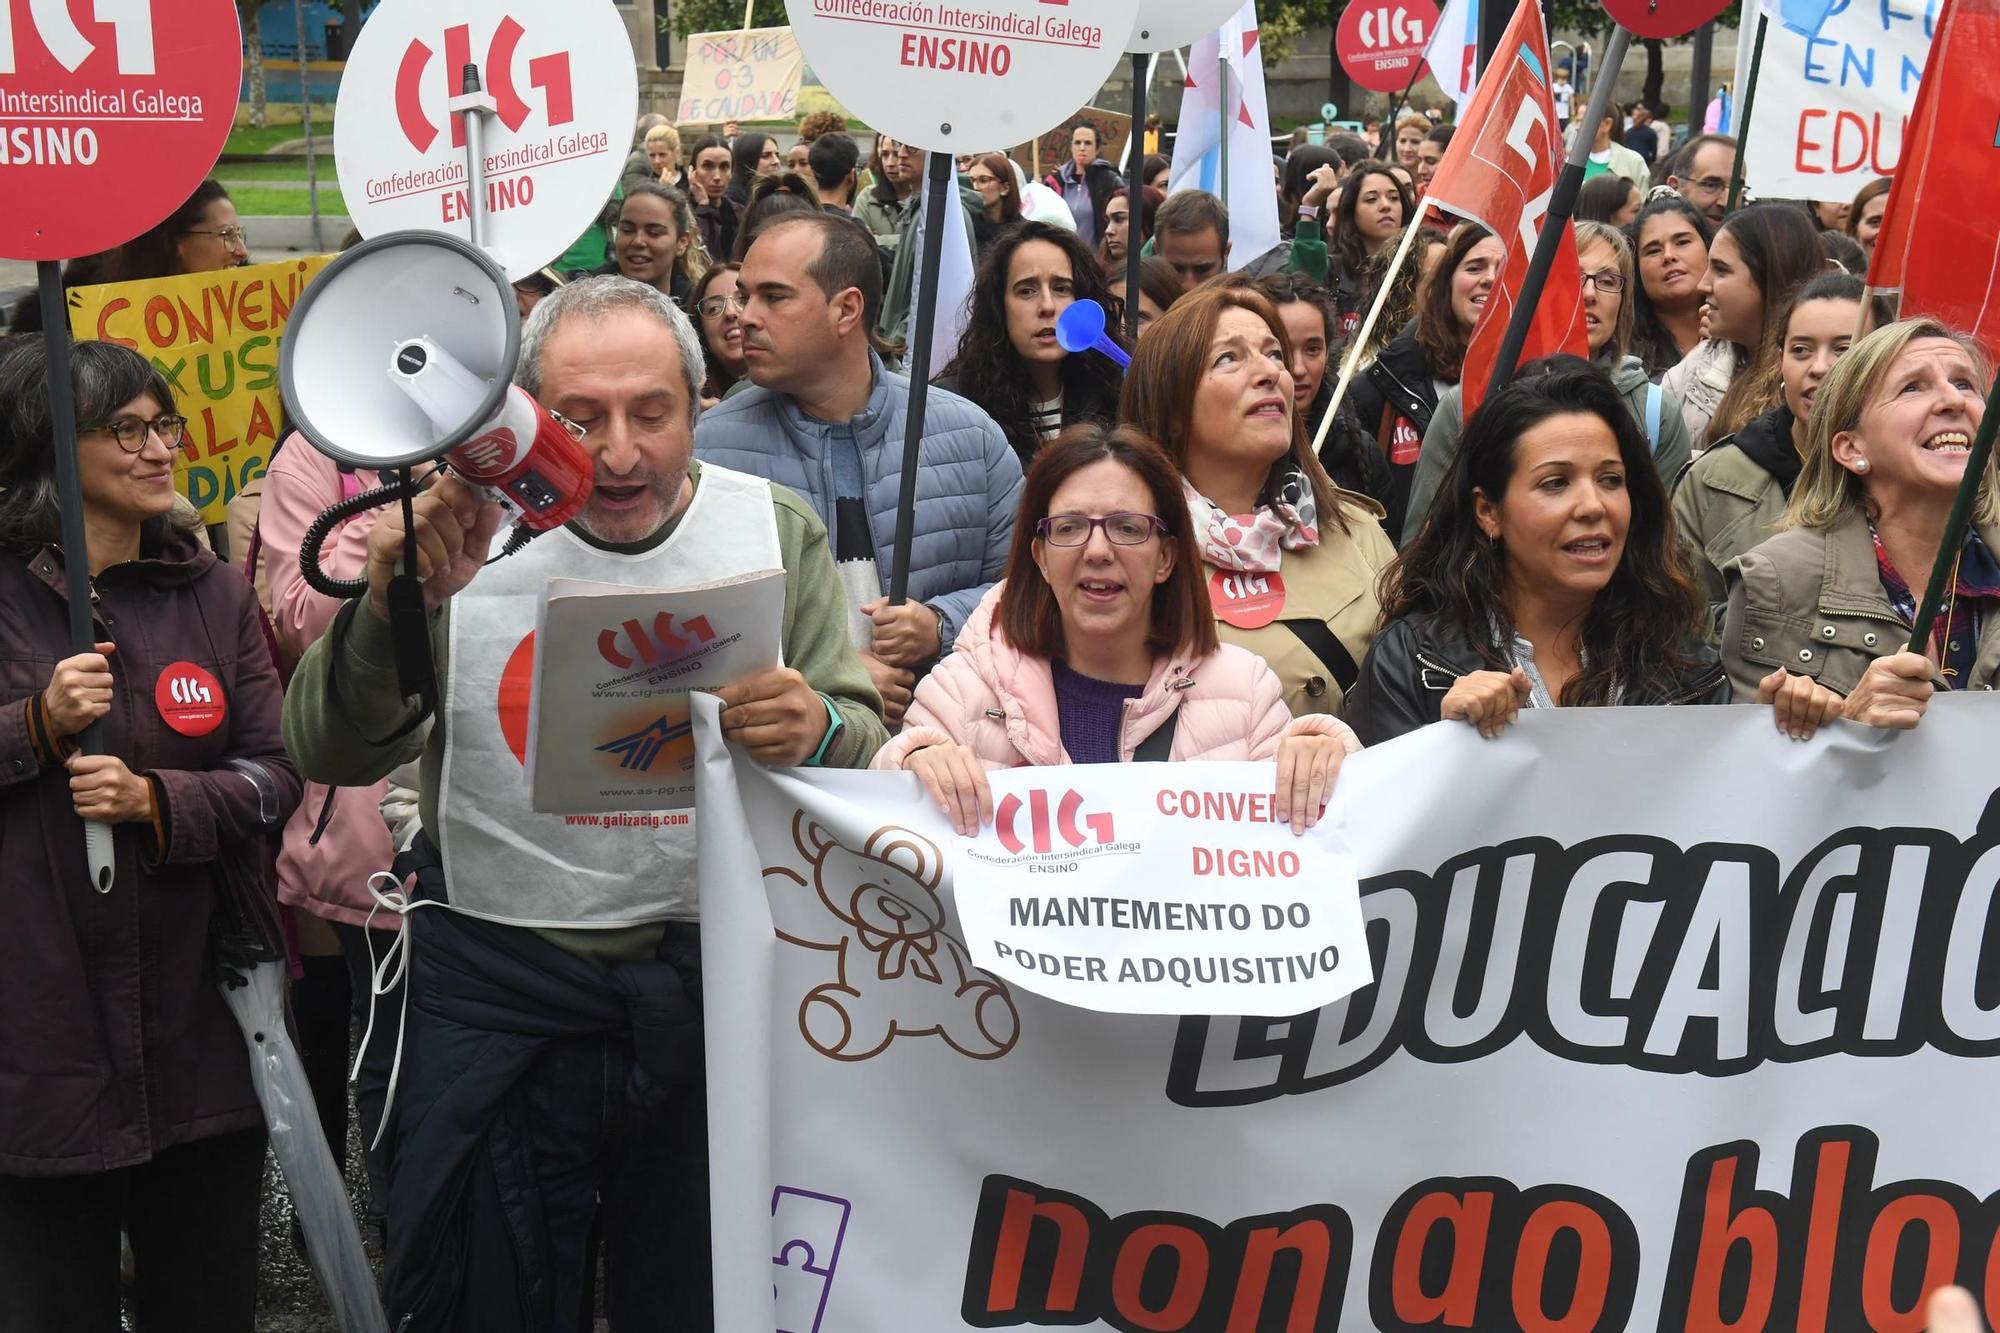 Manifestación de trabajadores de escuelas infantiles de A Coruña